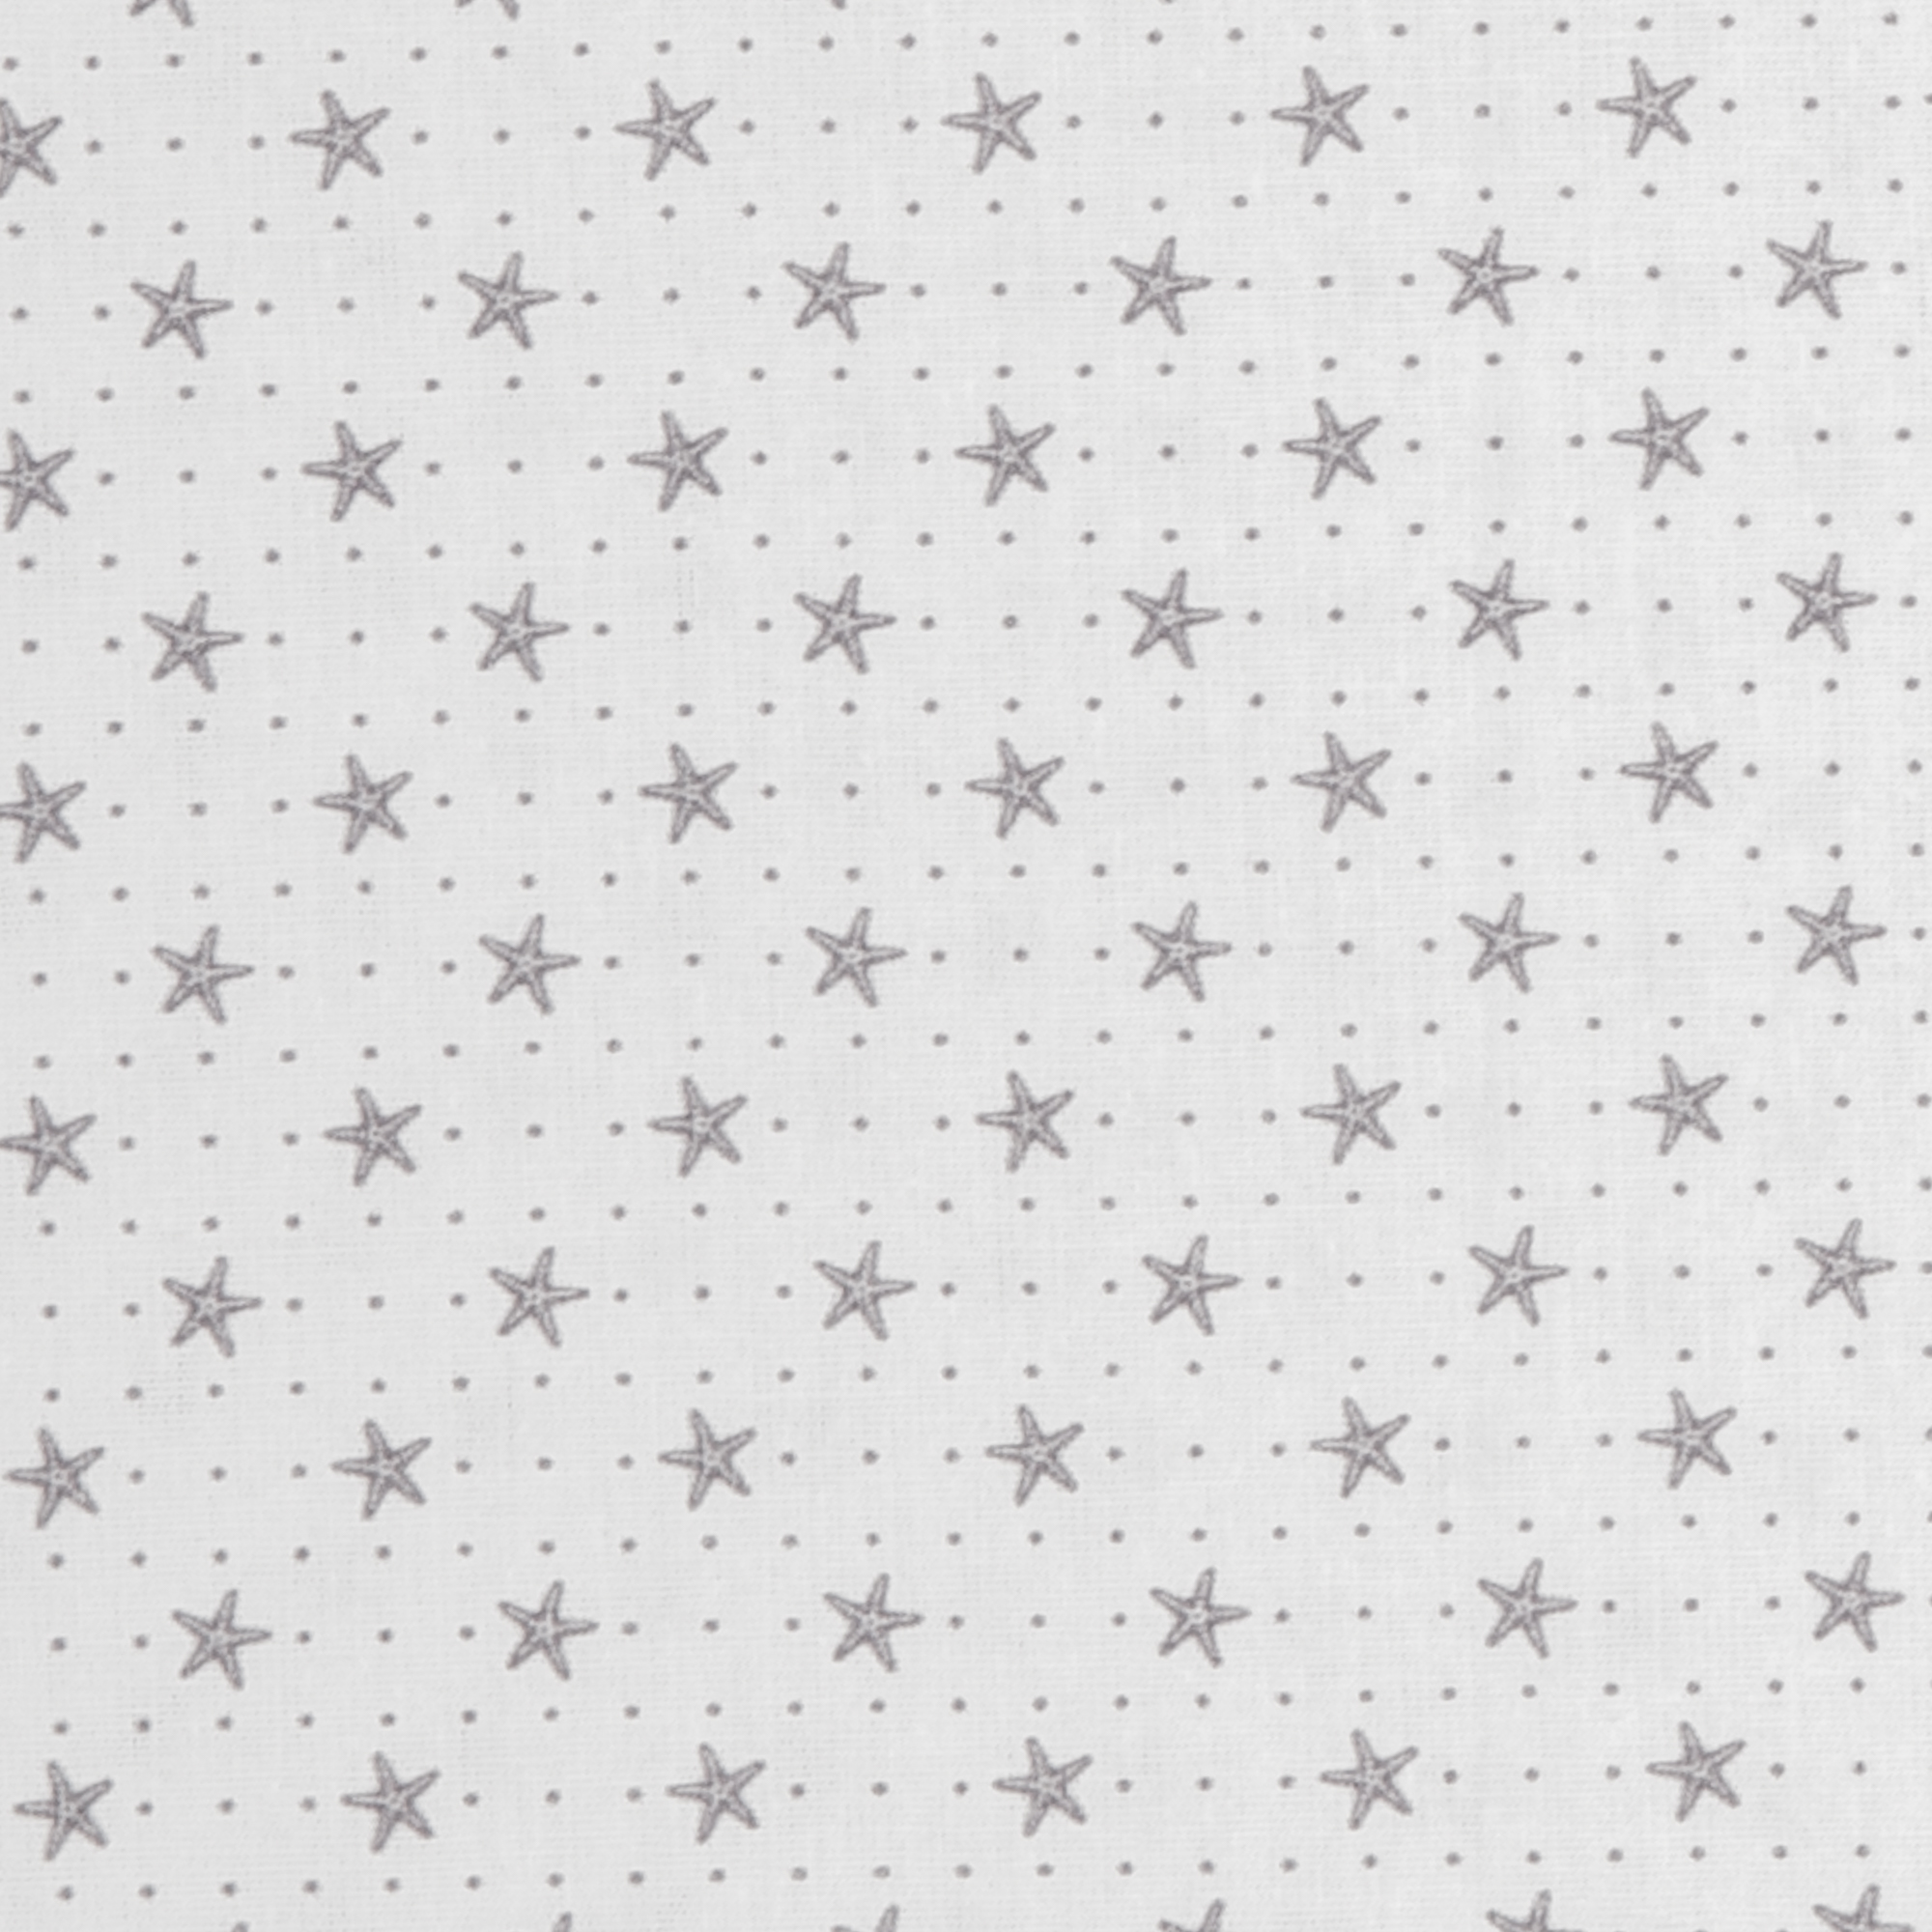 Maritime - Starfish - white-gray